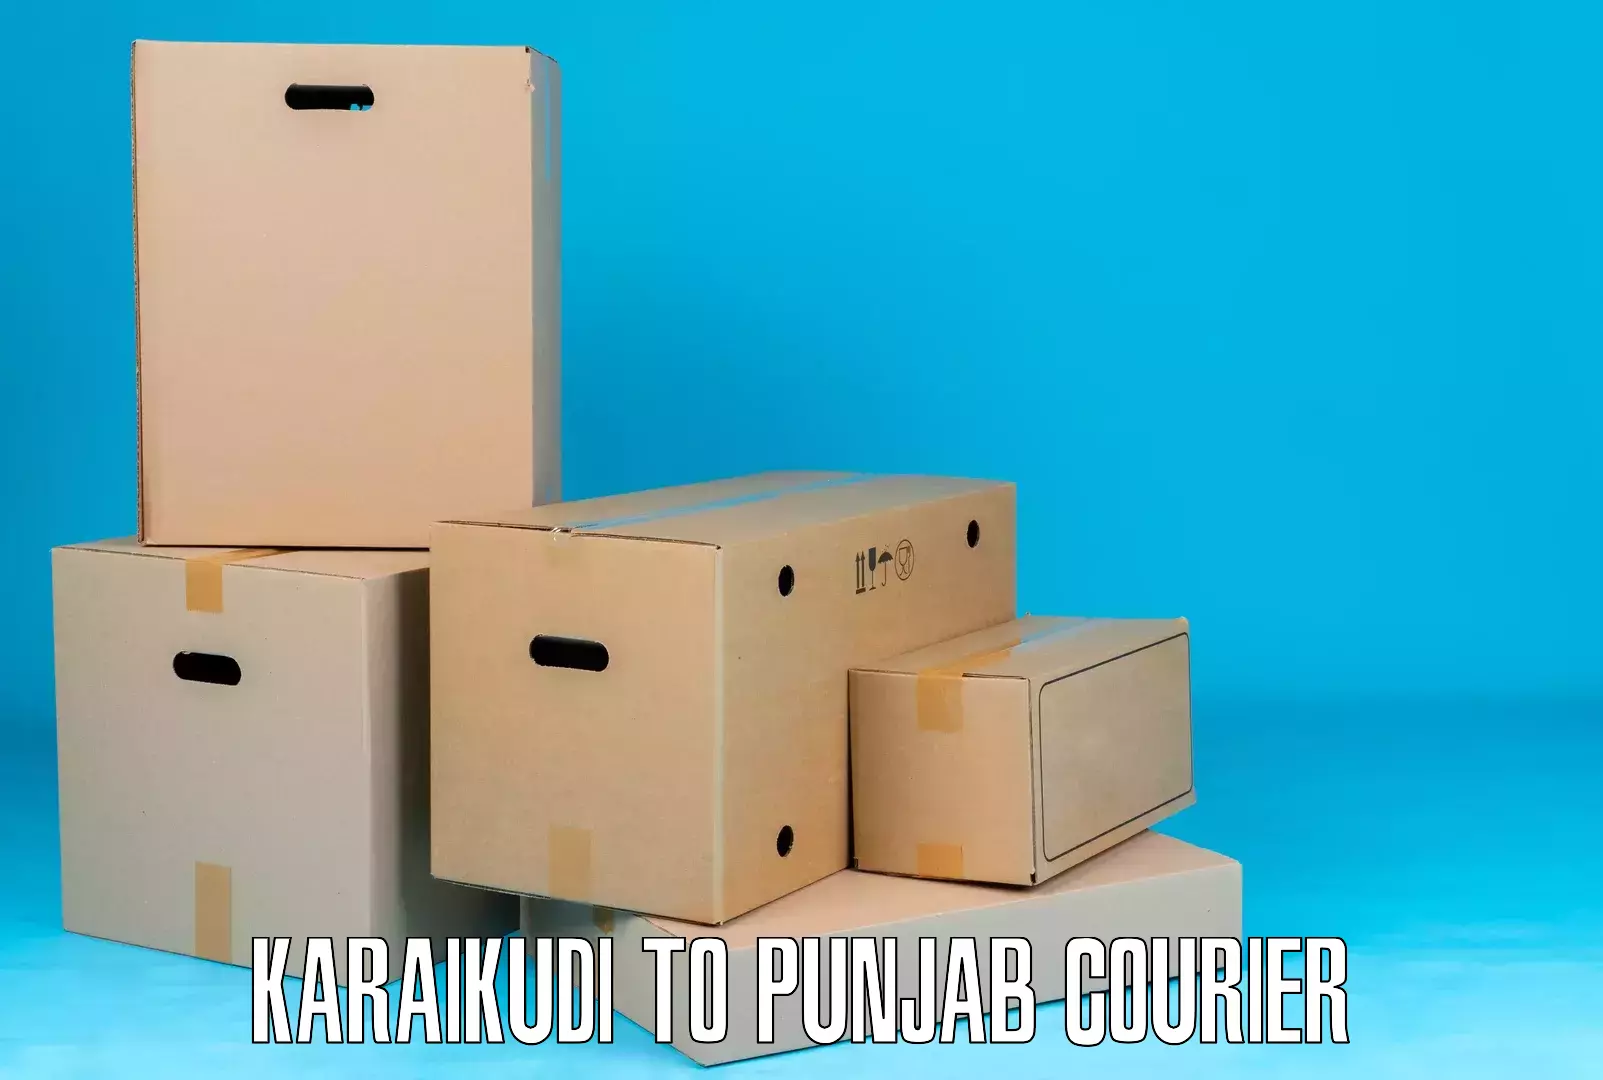 Efficient package consolidation Karaikudi to Nangal